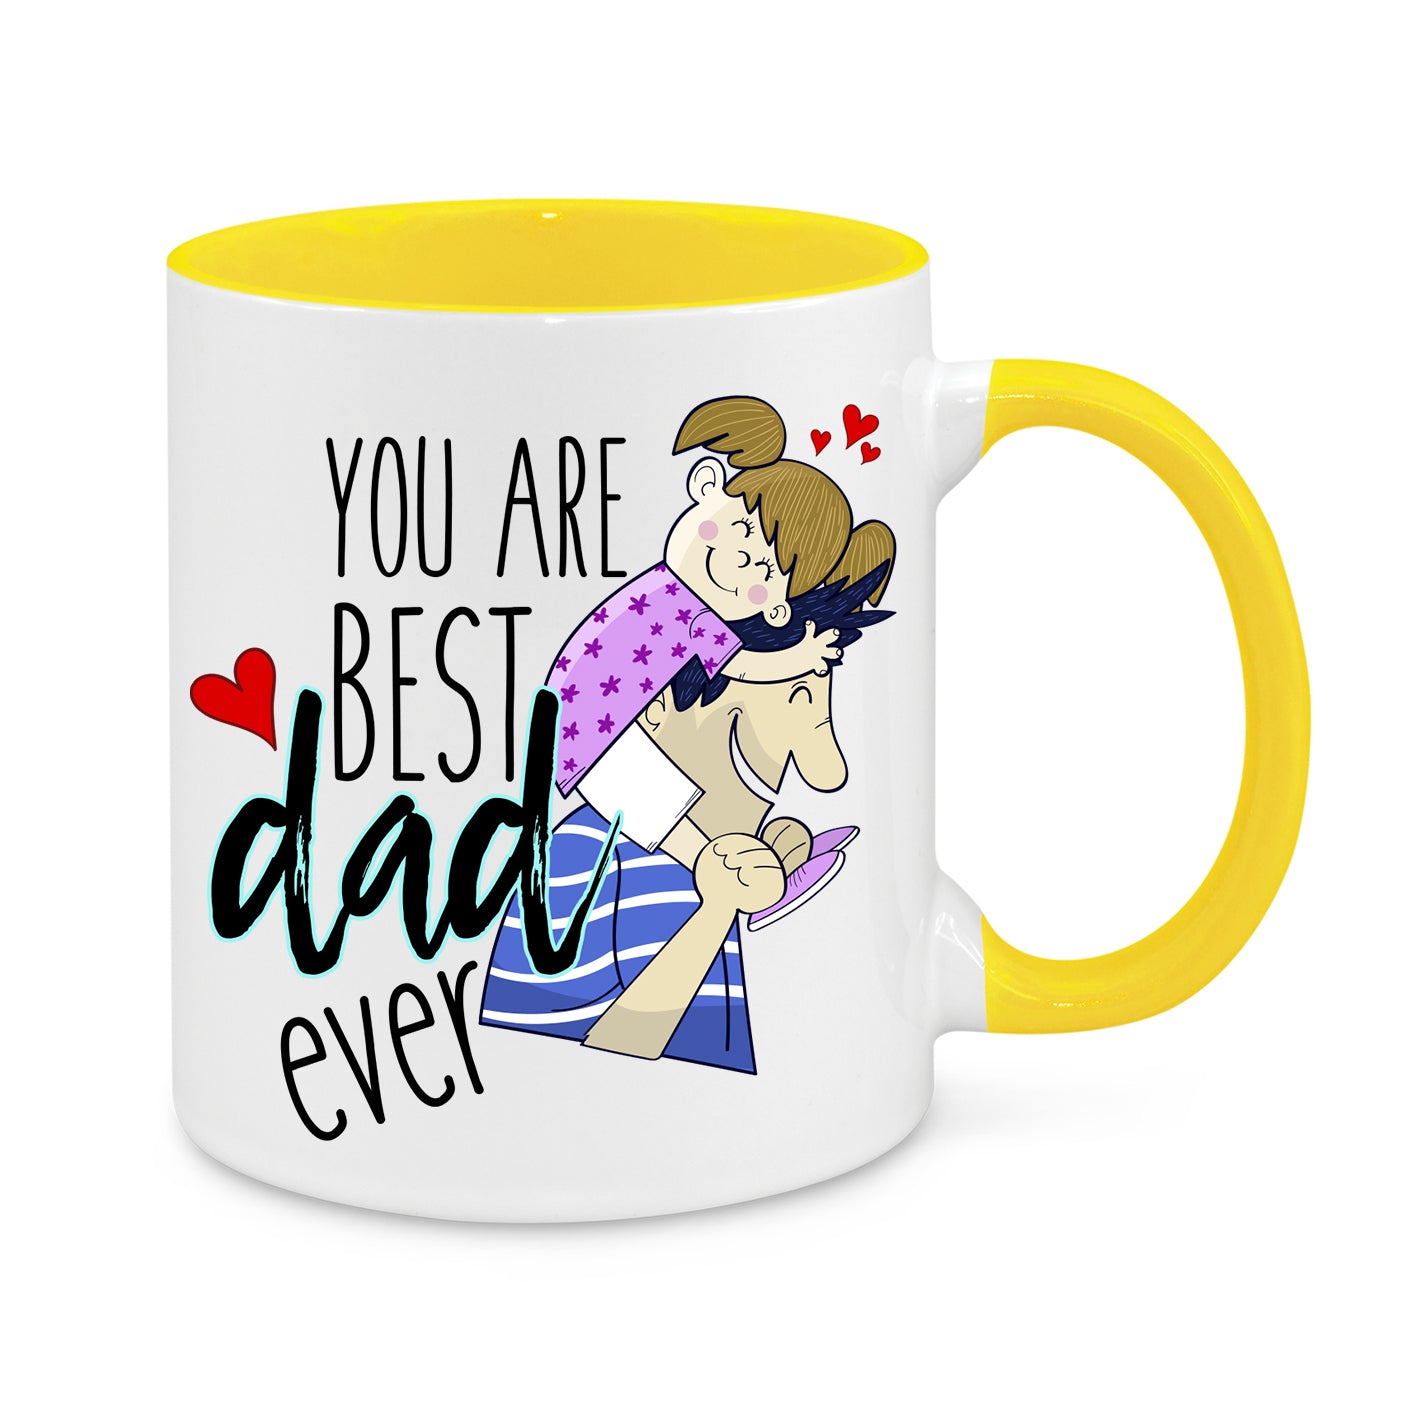 You Are Best Dad Ever Novelty Mug